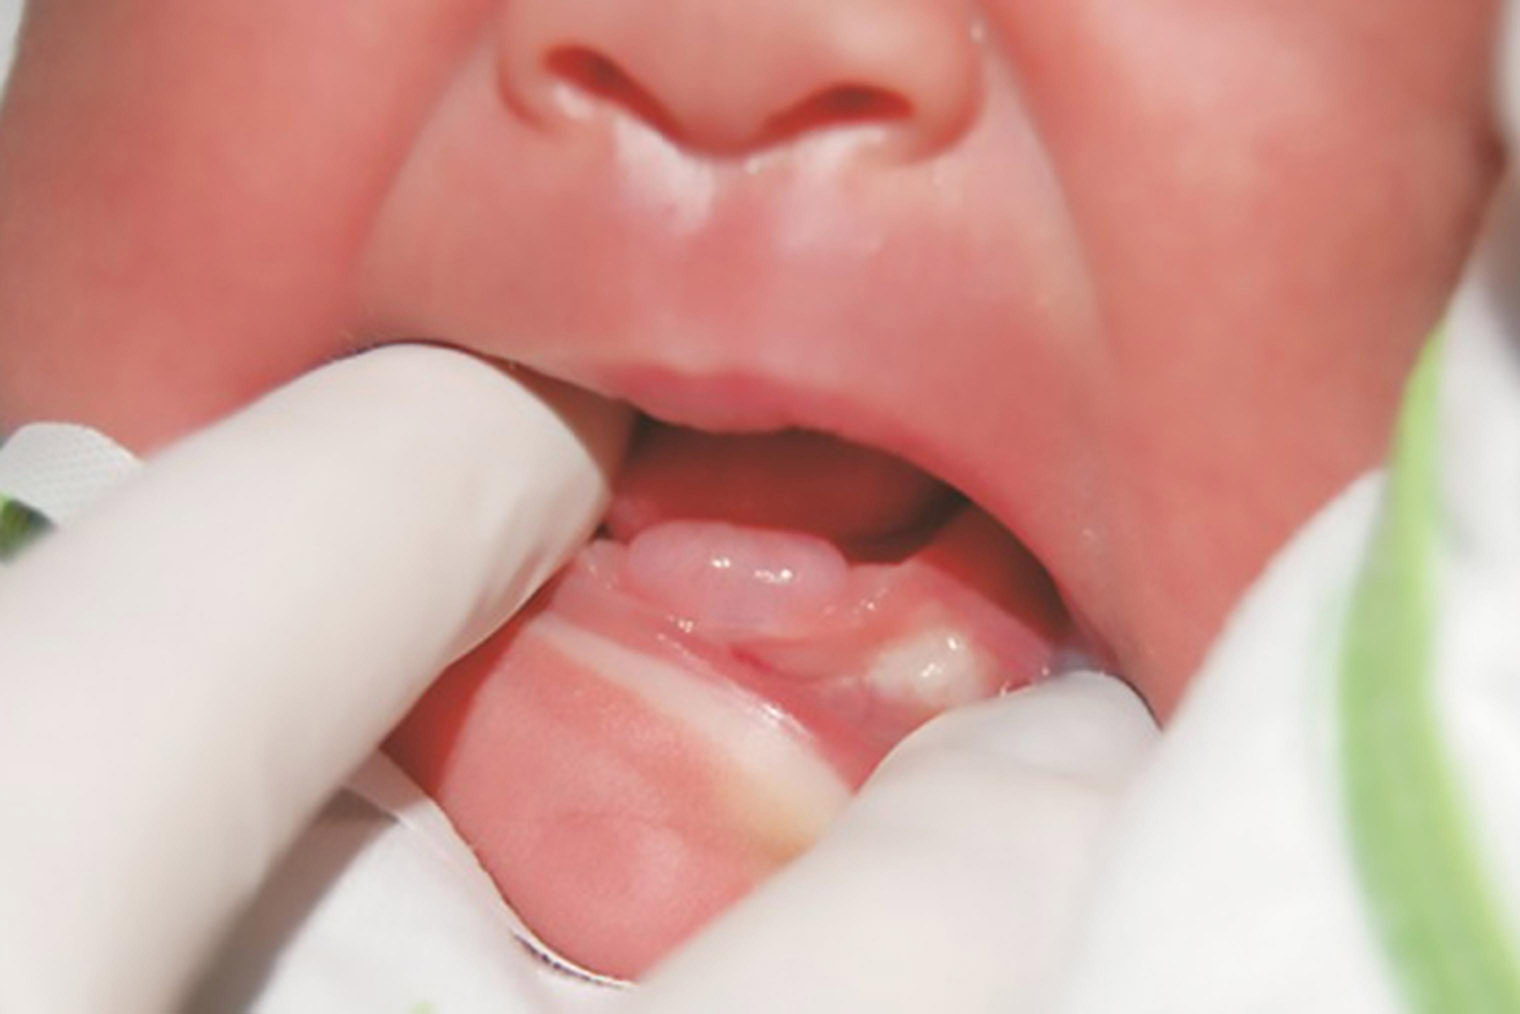 Так выглядит киста, которая может появиться за несколько дней или месяцев до прорезывания зуба. Источник: ncbi.nlm.nih.gov